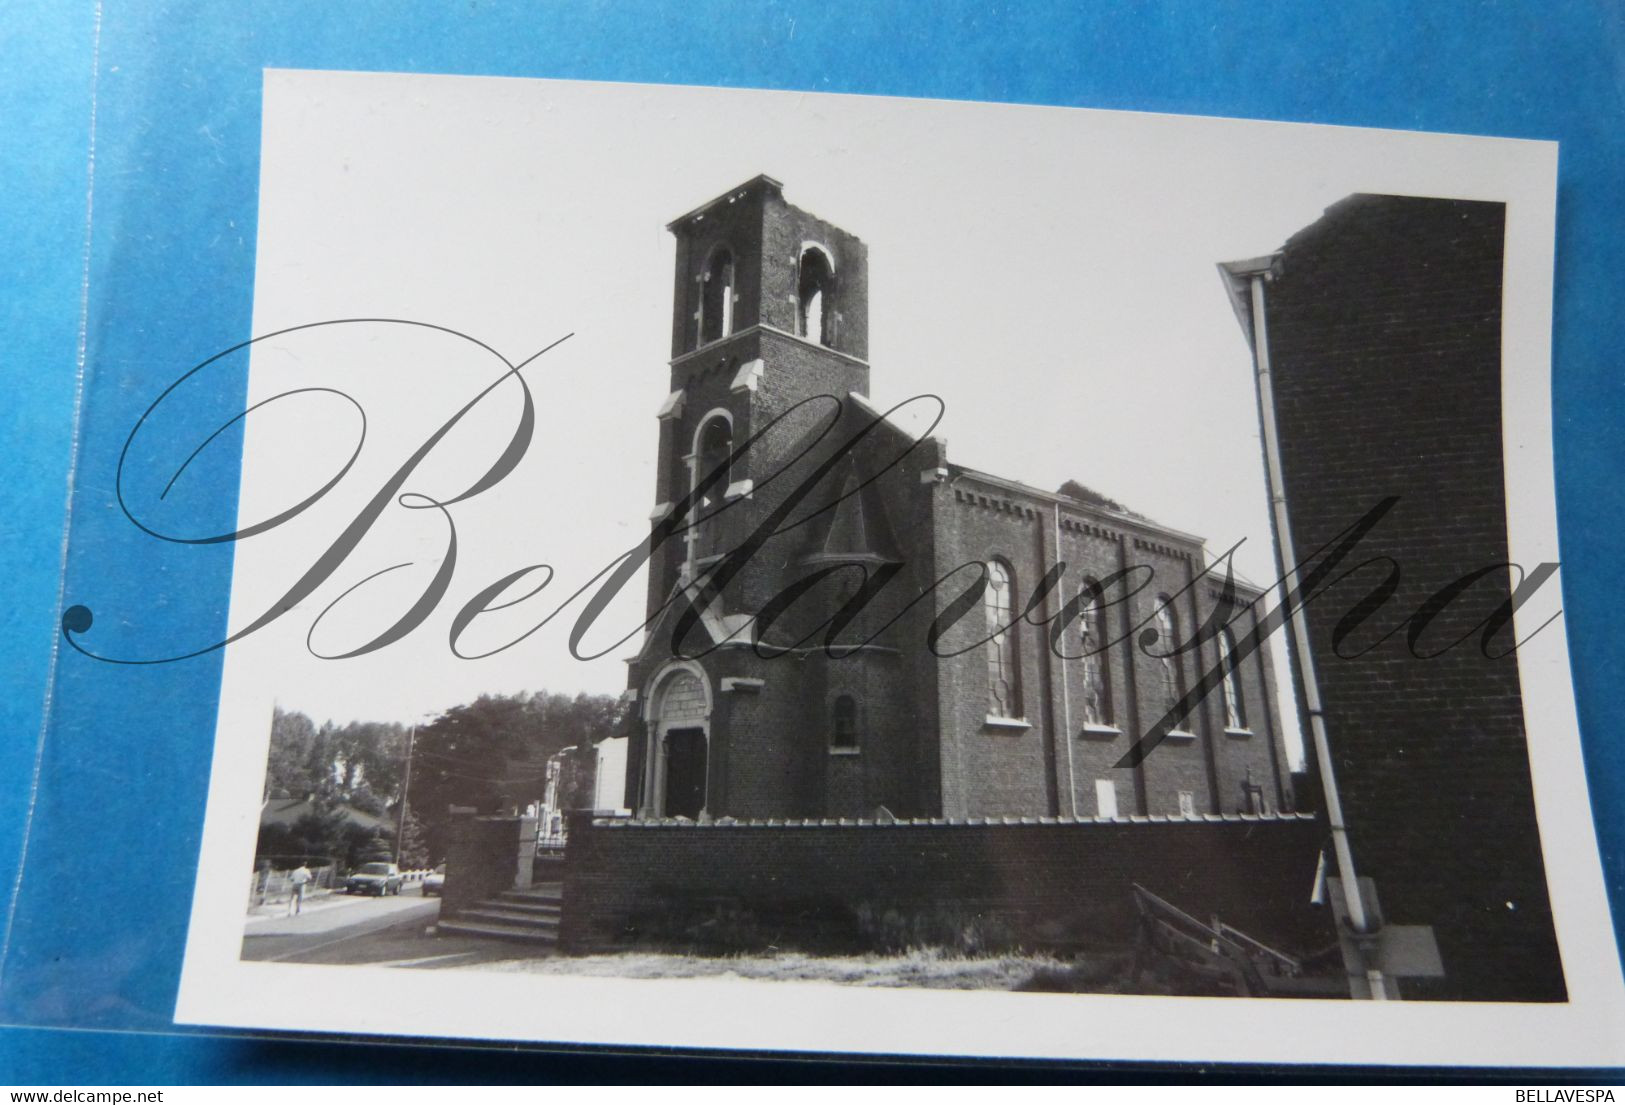 Eglise Saint-Laurent à Rosoux-Crenwick Eglise Brule? Foto-Photo Prive, - Berloz